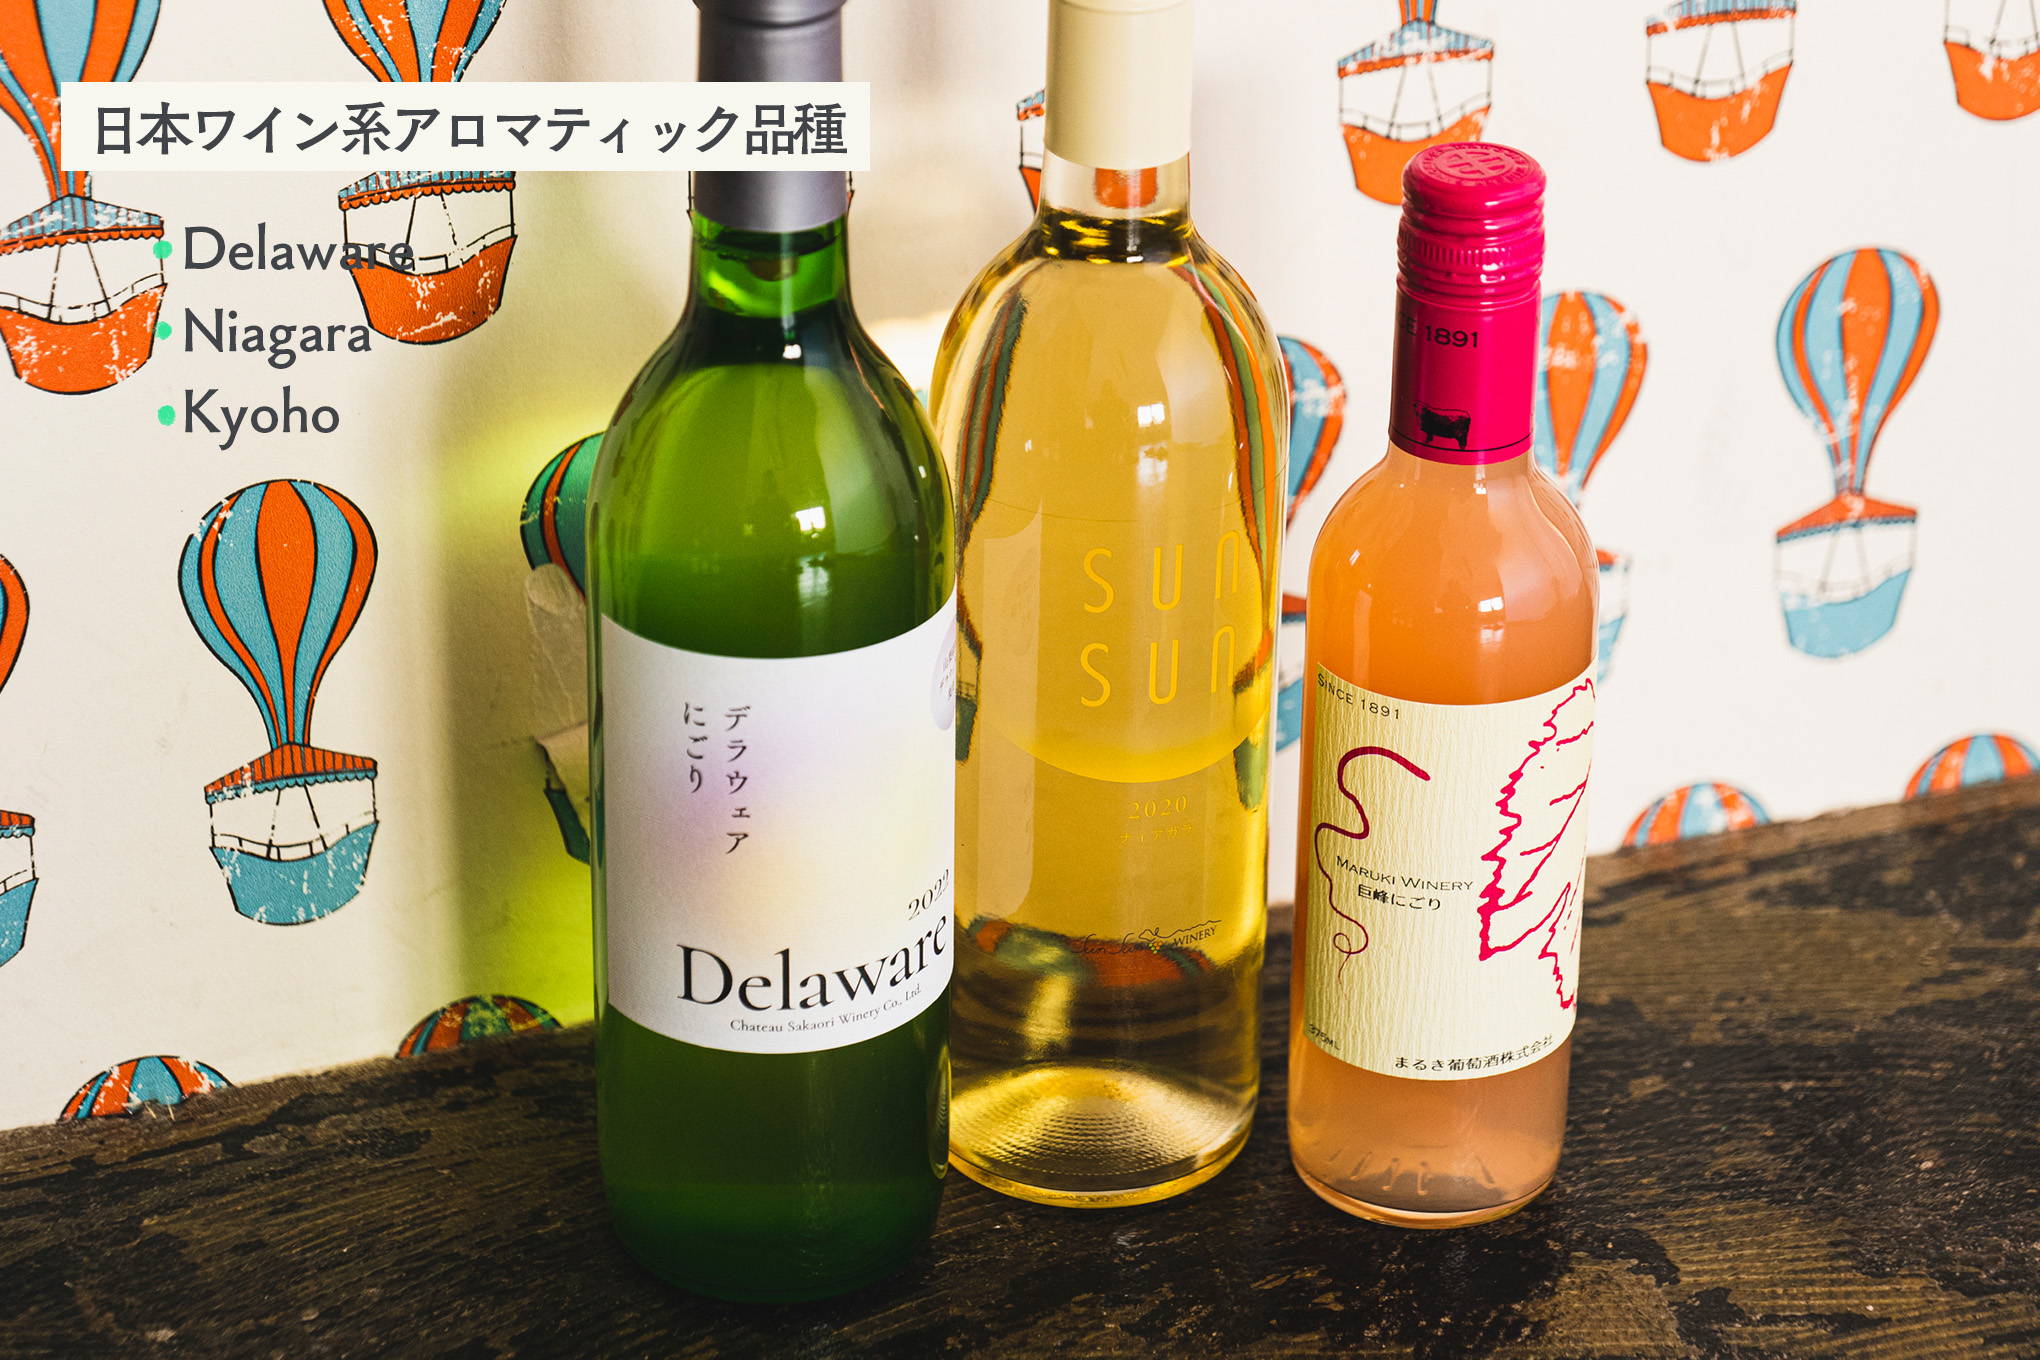 日本ワインならではのアロマティック品種。デラウェア、ナイアガラ、巨峰などの甘い香りに魅せられて。